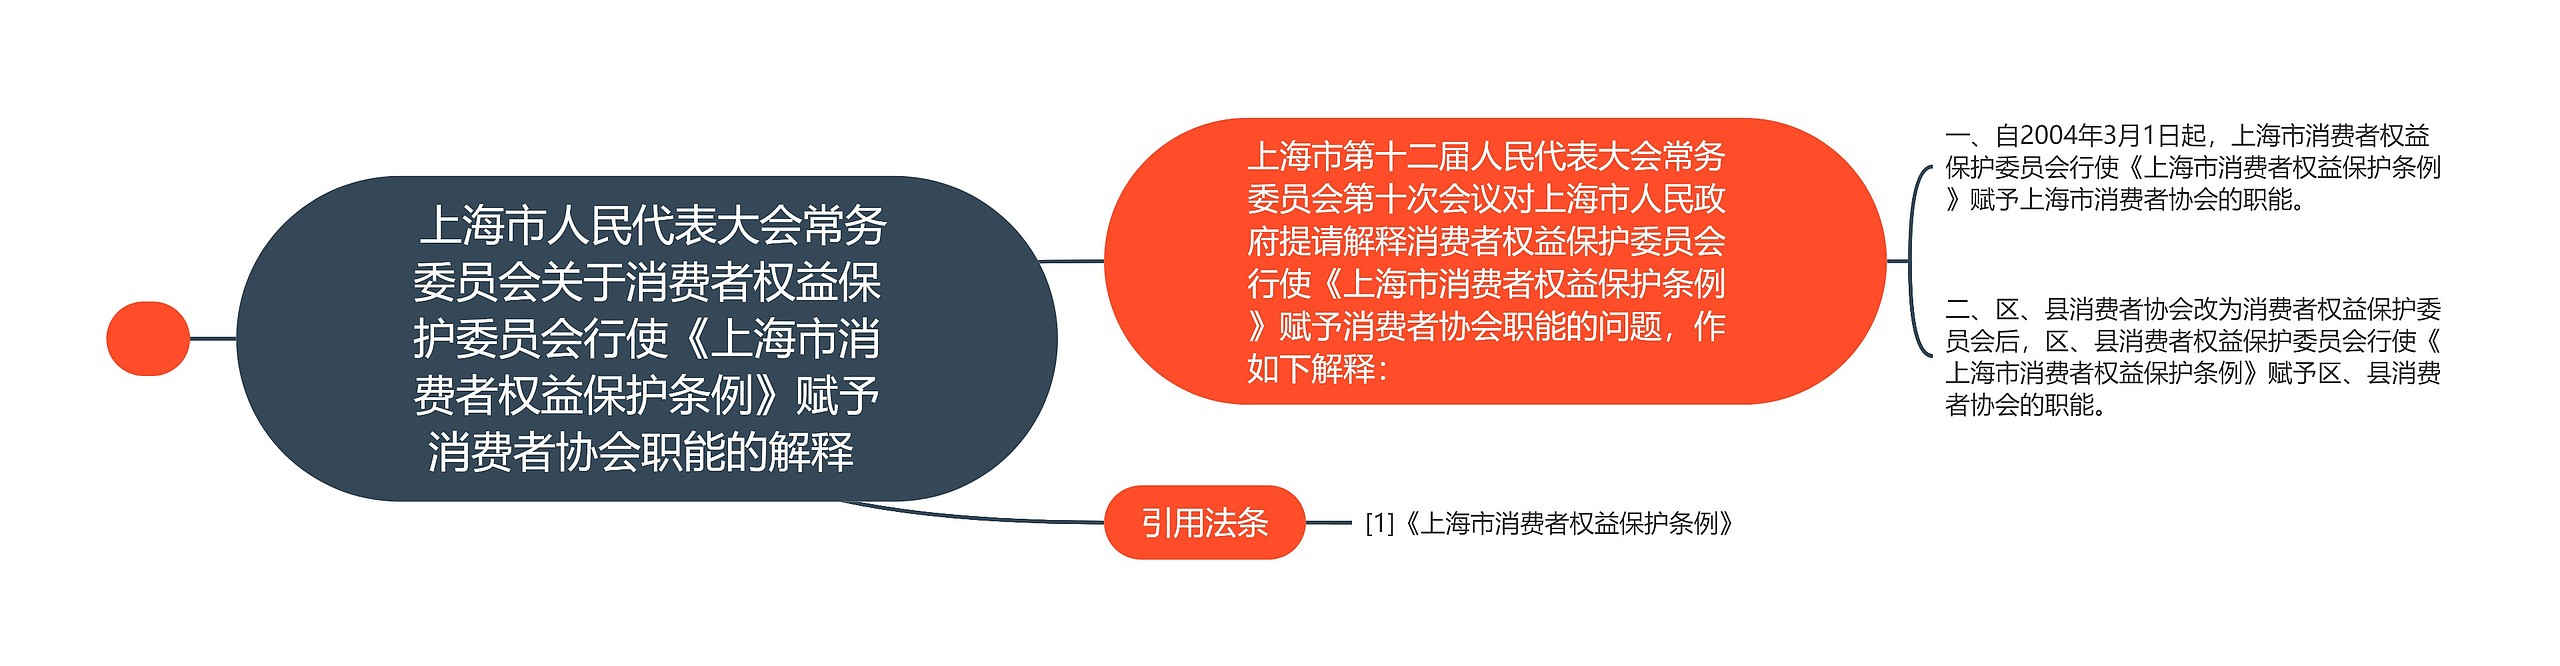  上海市人民代表大会常务委员会关于消费者权益保护委员会行使《上海市消费者权益保护条例》赋予消费者协会职能的解释 